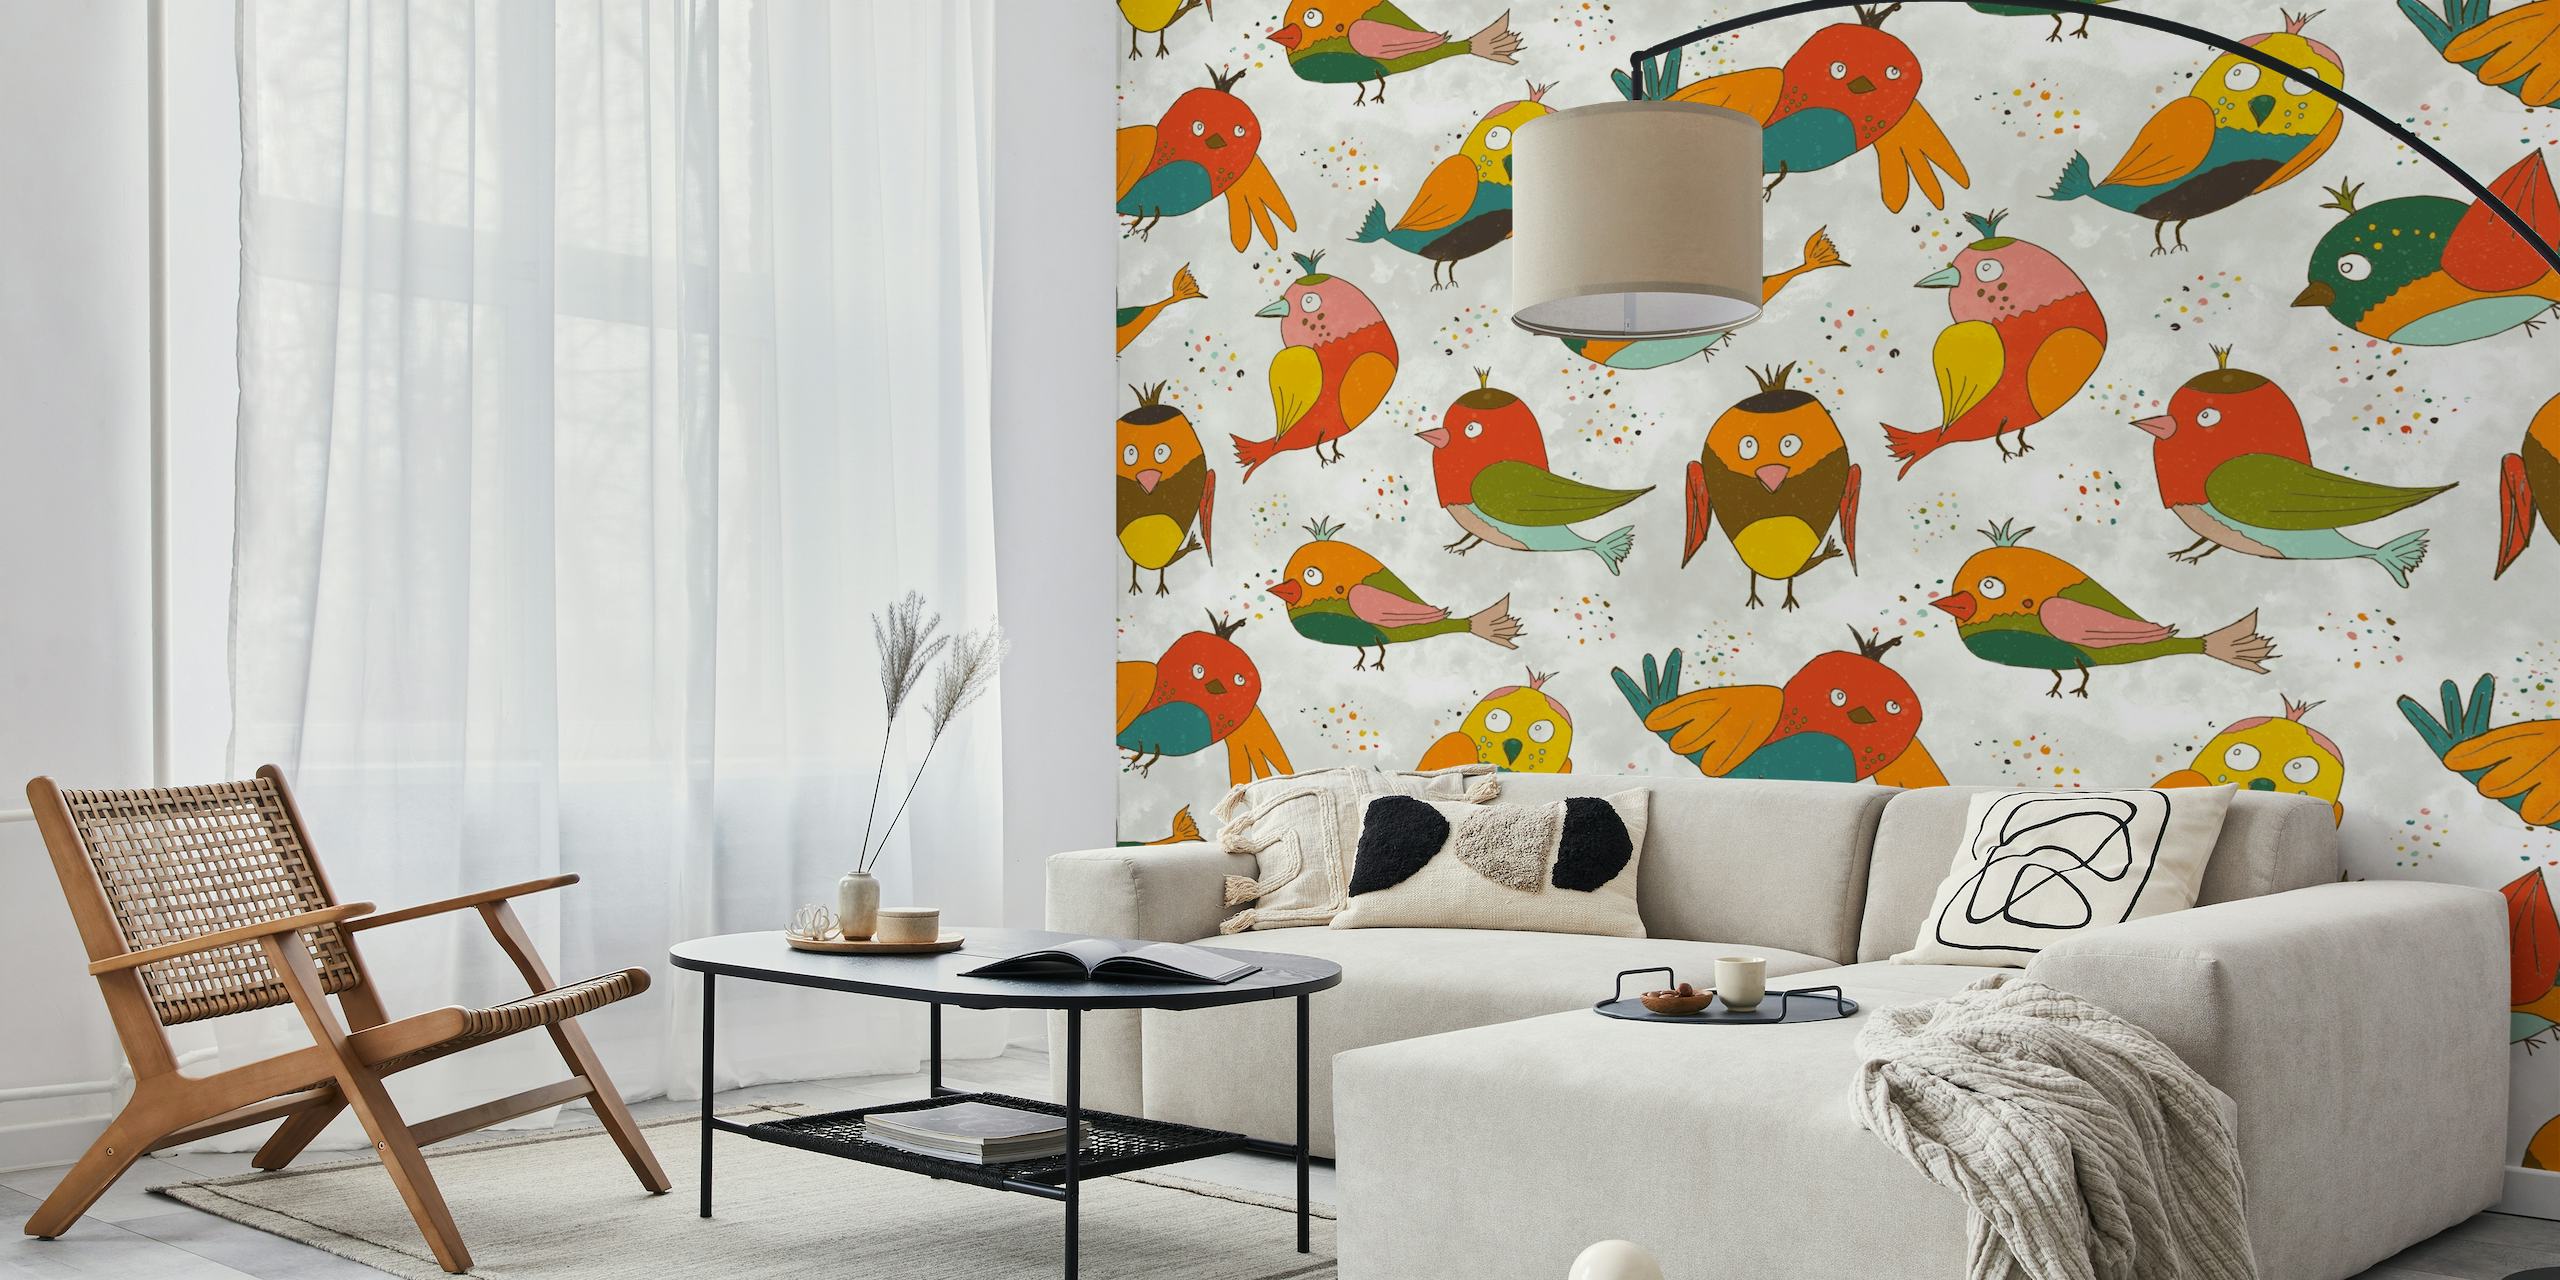 Farbenfrohe Illustration von Frühlingsfinken und Kanarienvögeln als Fototapete mit floralen Elementen